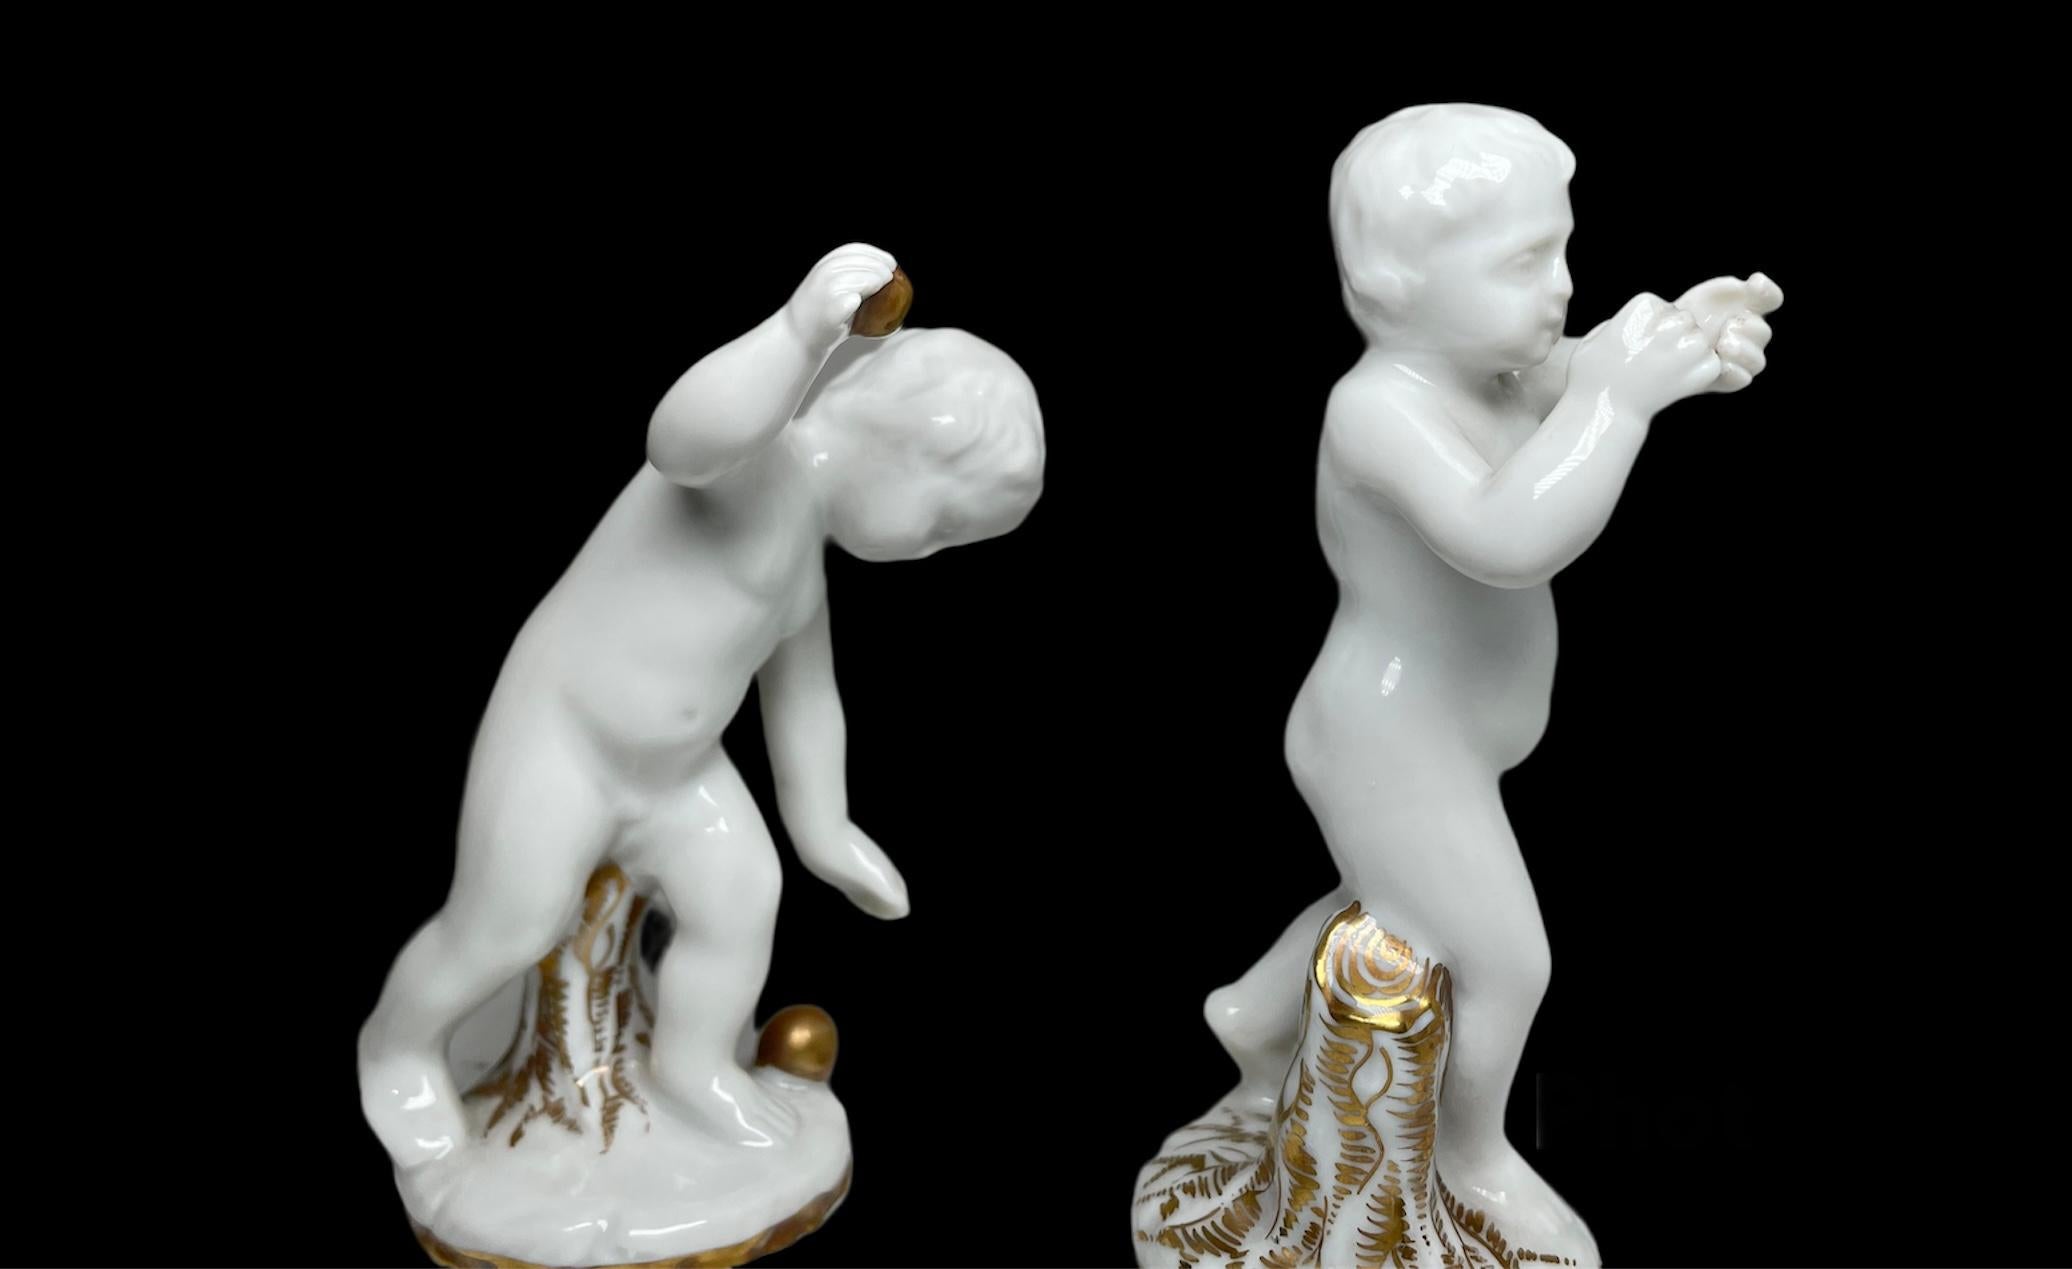 Whiting est une paire d'angelots nus en porcelaine de Parme blanche émaillée de Capodimonte qui jouent avec de petites boules rondes dorées. Ils se tiennent tous les deux près d'un vieux tronc d'arbre coupé et doré. L'un d'eux essaie de lancer le